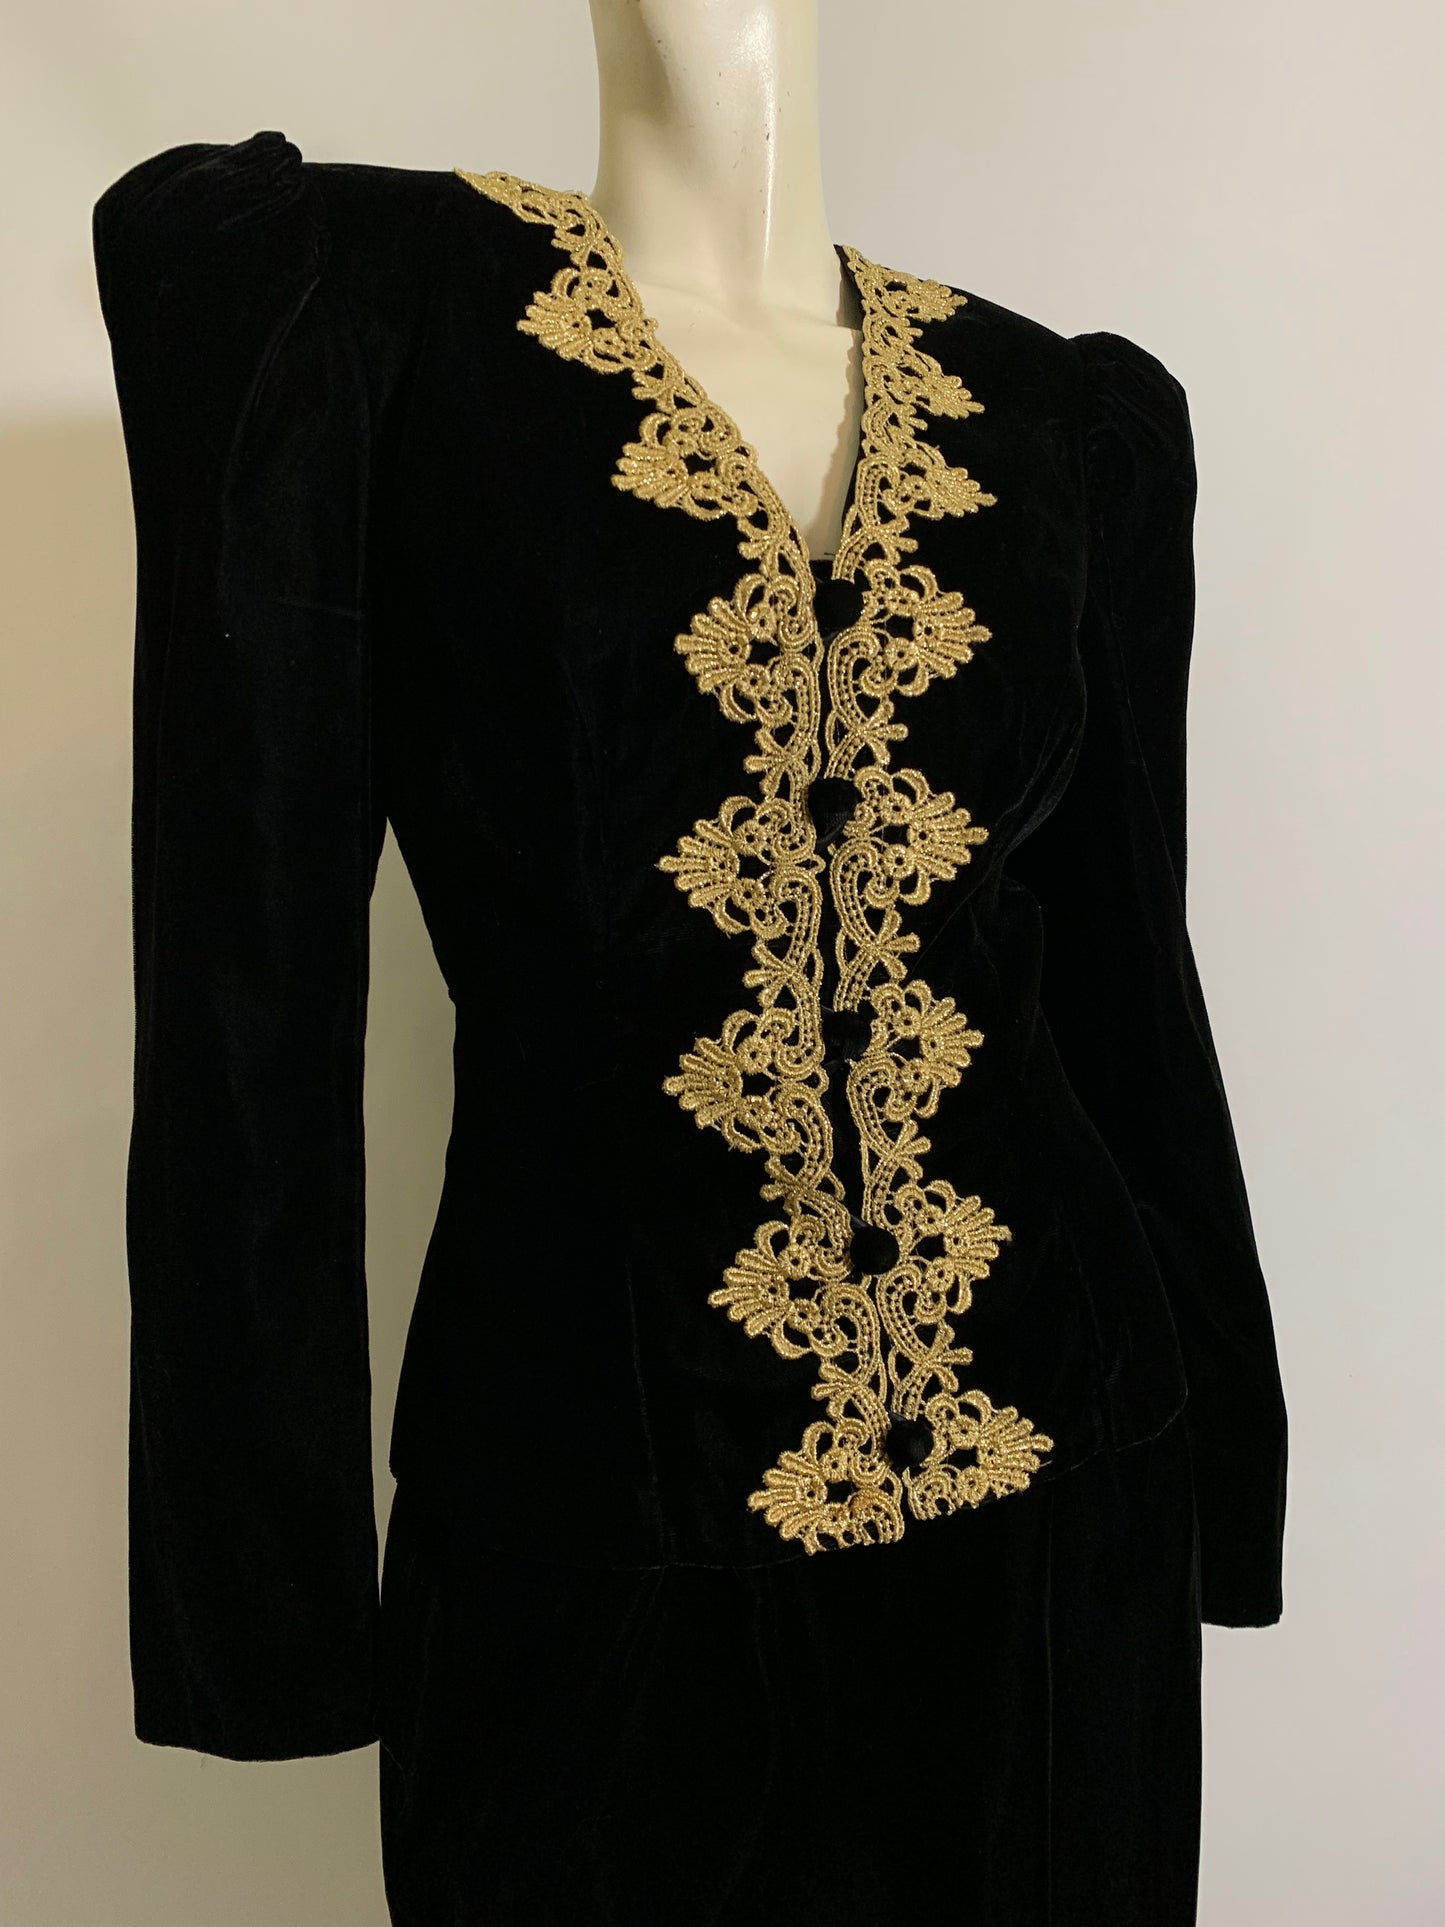 Black Velvet Cocktail Suit with Metallic Gold Braid Trim circa 1980s